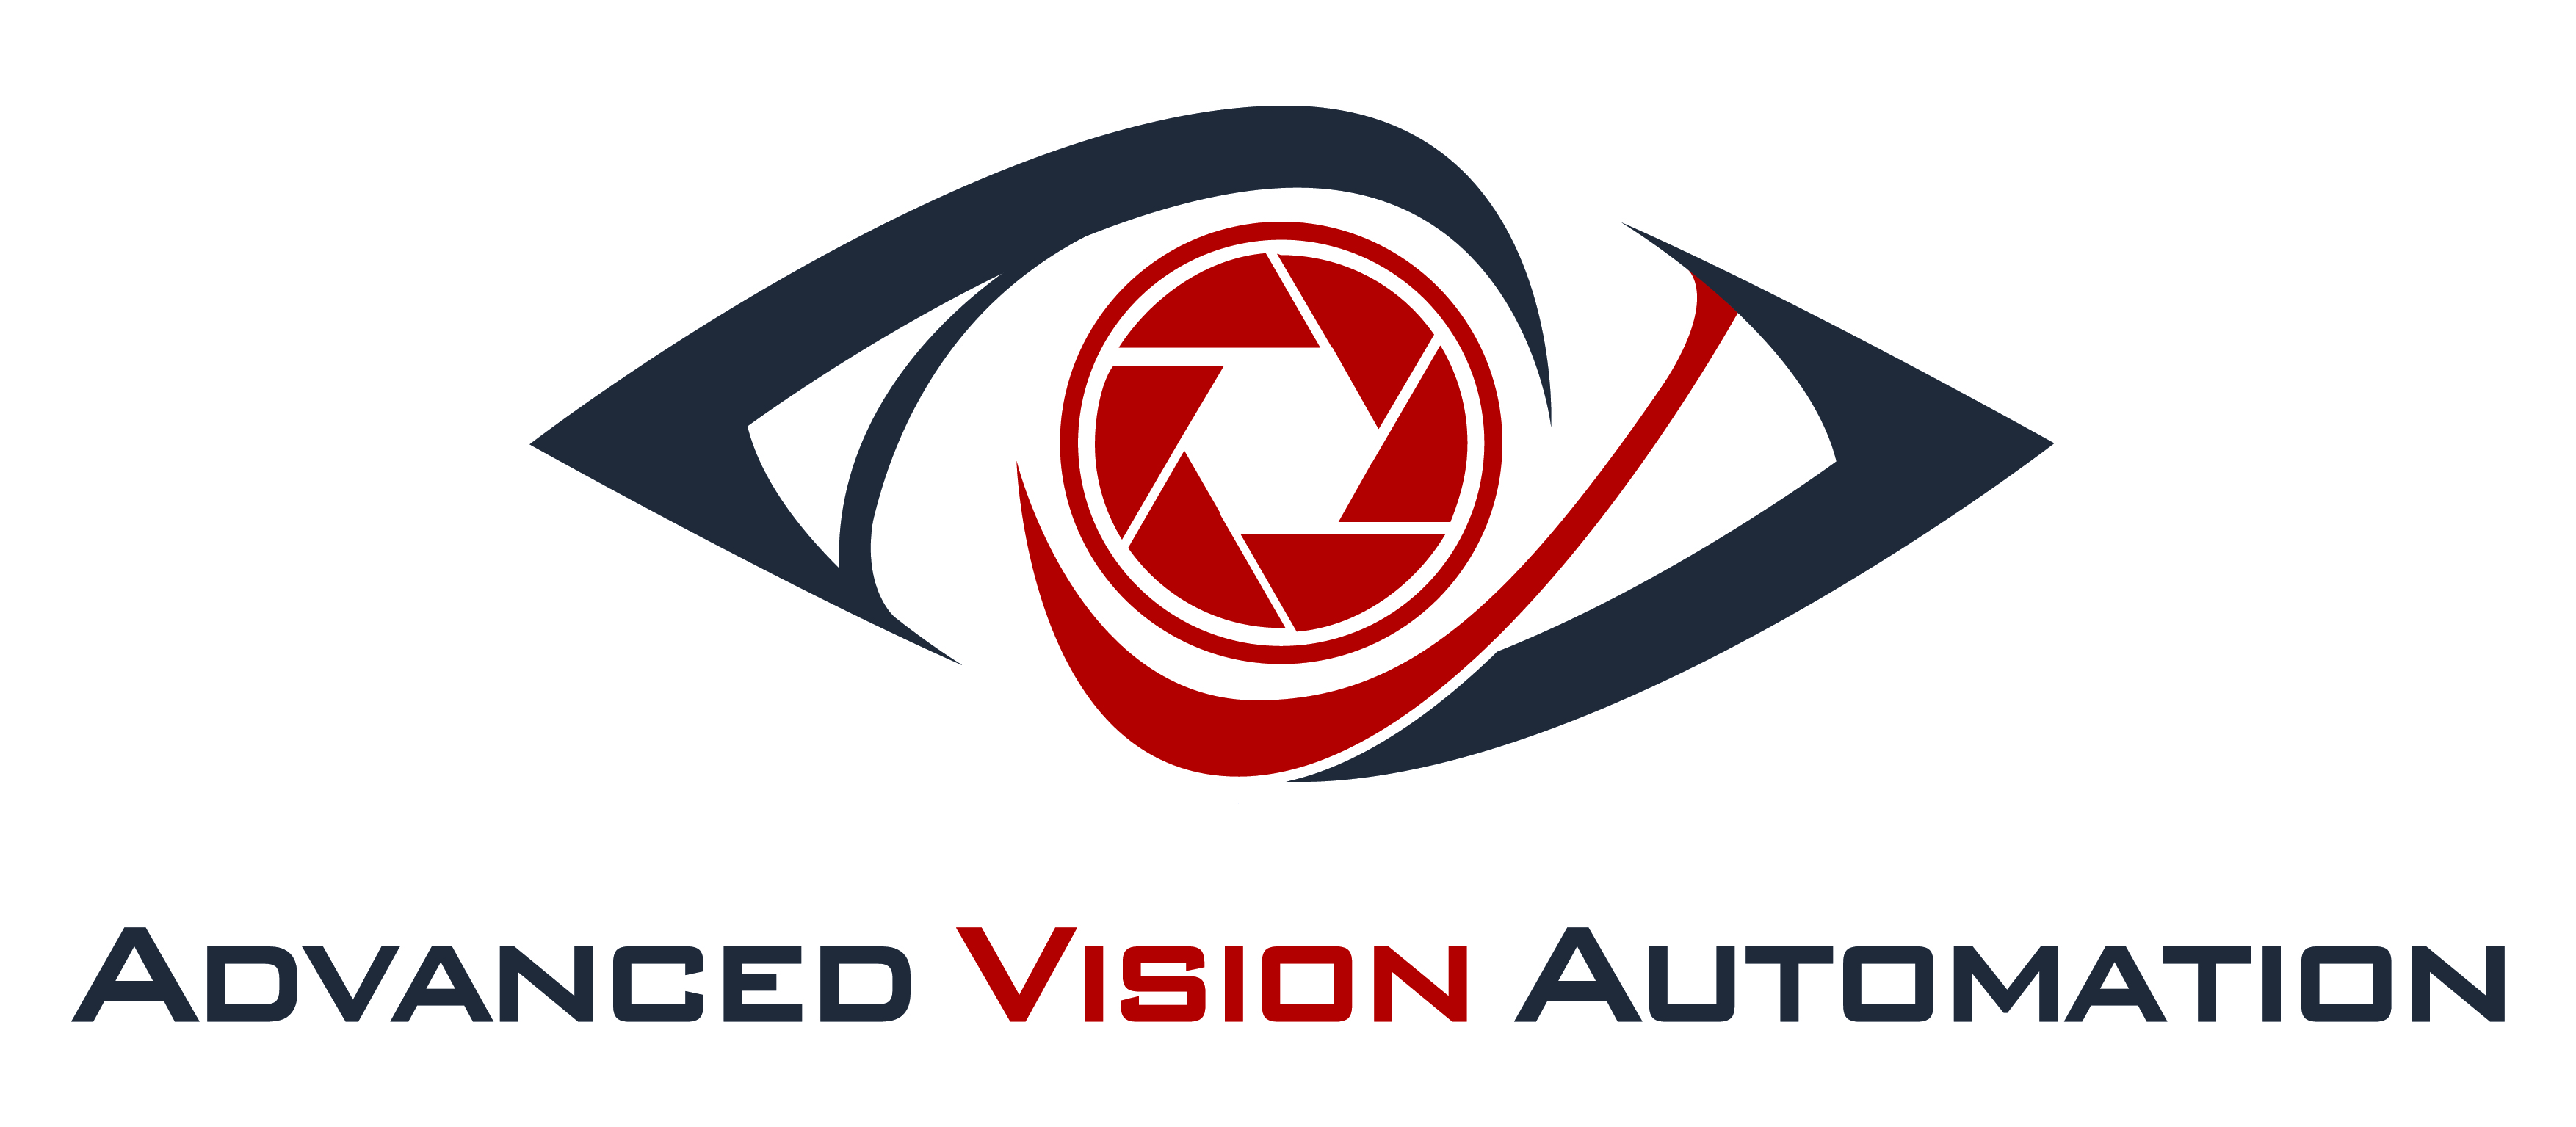 Công ty TNHH Tự động hóa Thị giác máy - AVA Vision